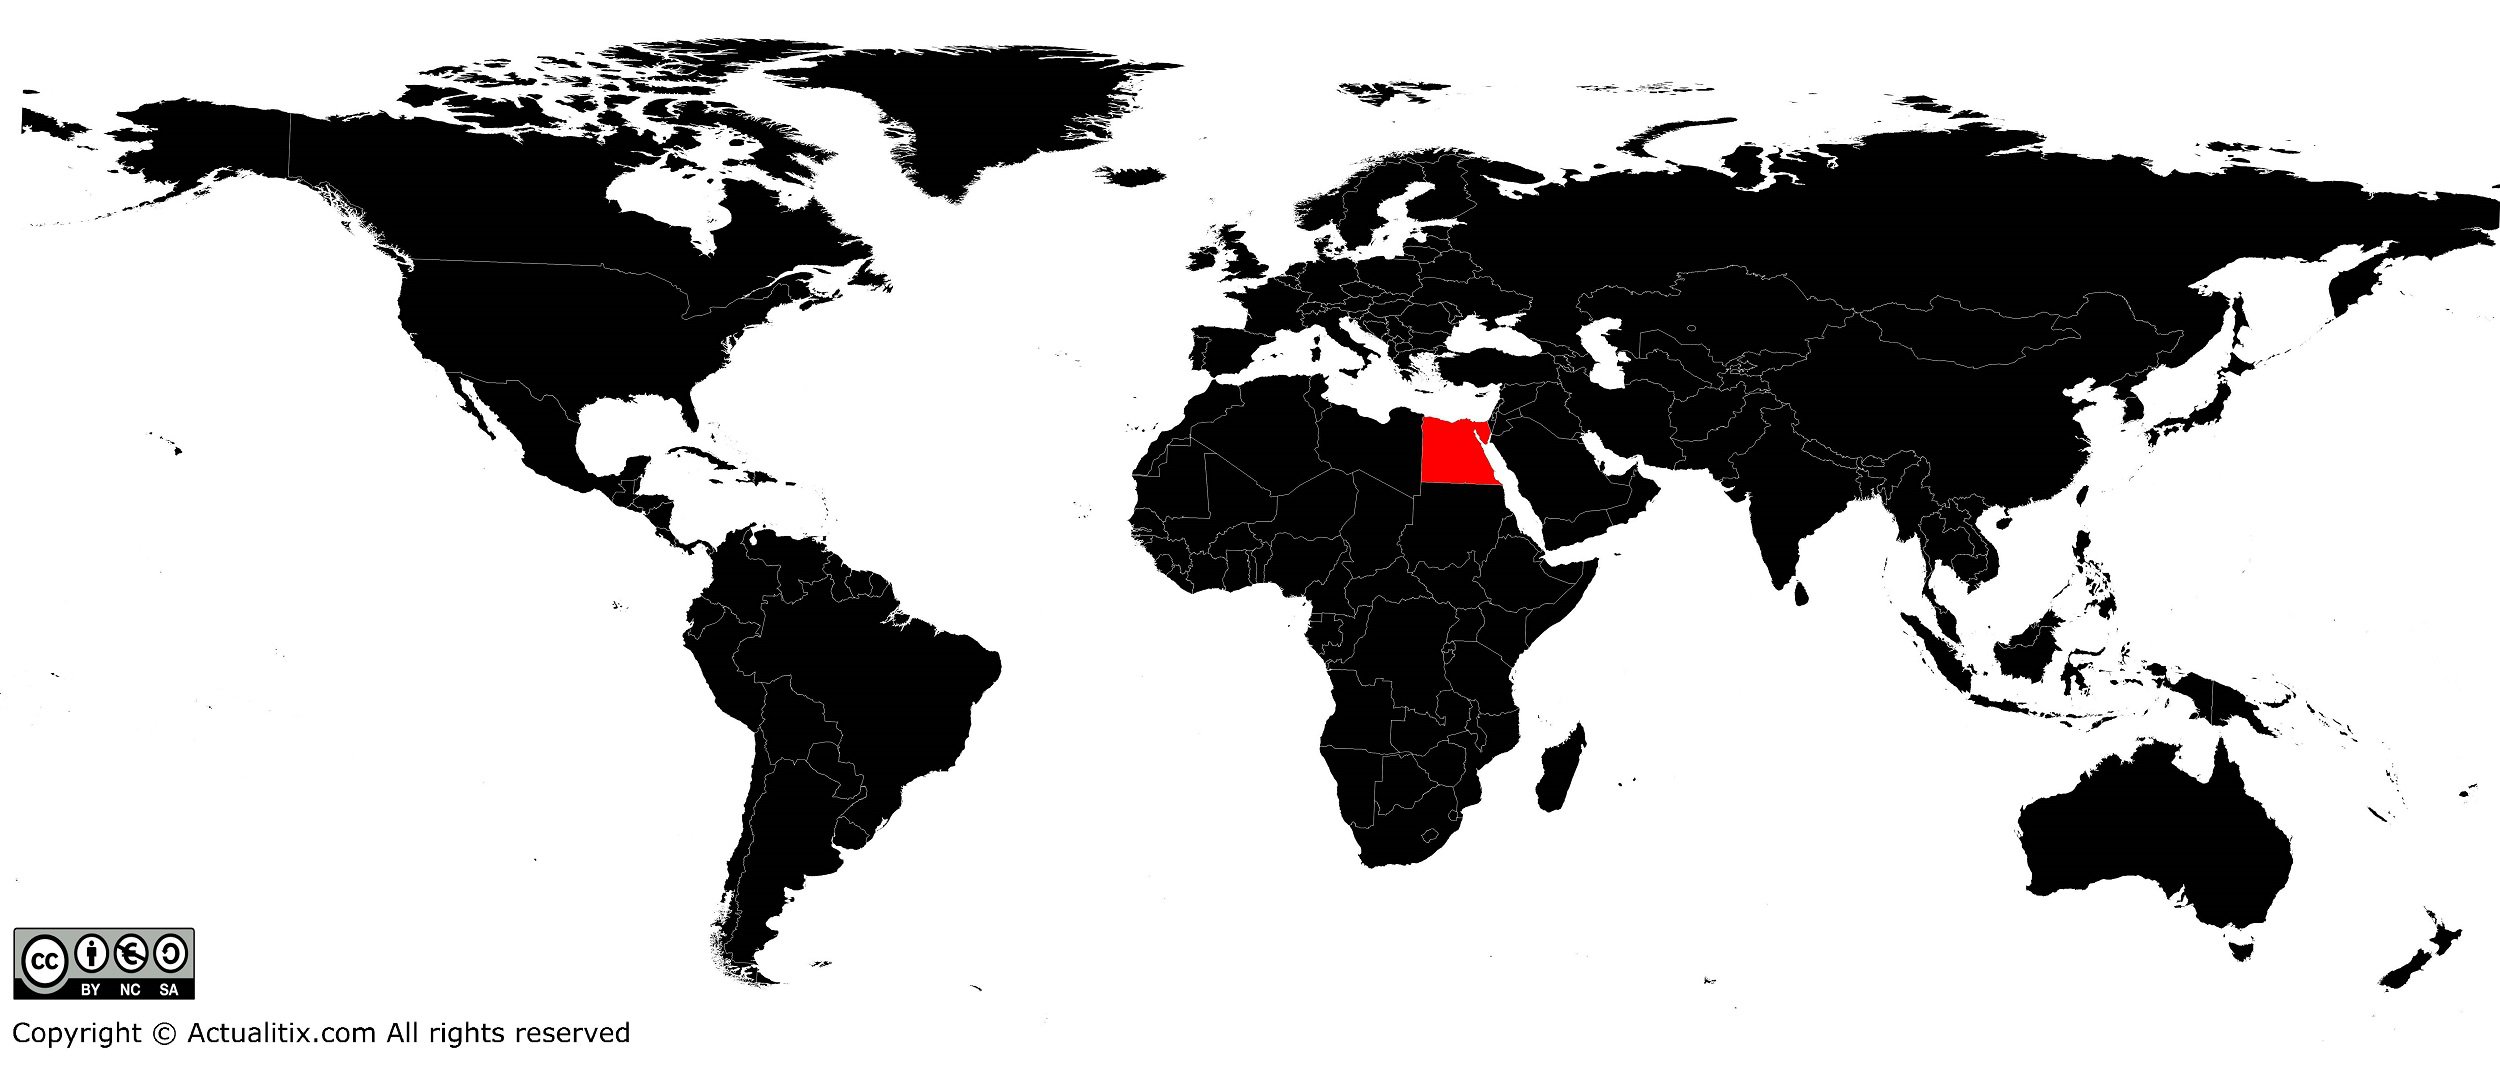 Egypte sur une carte du monde